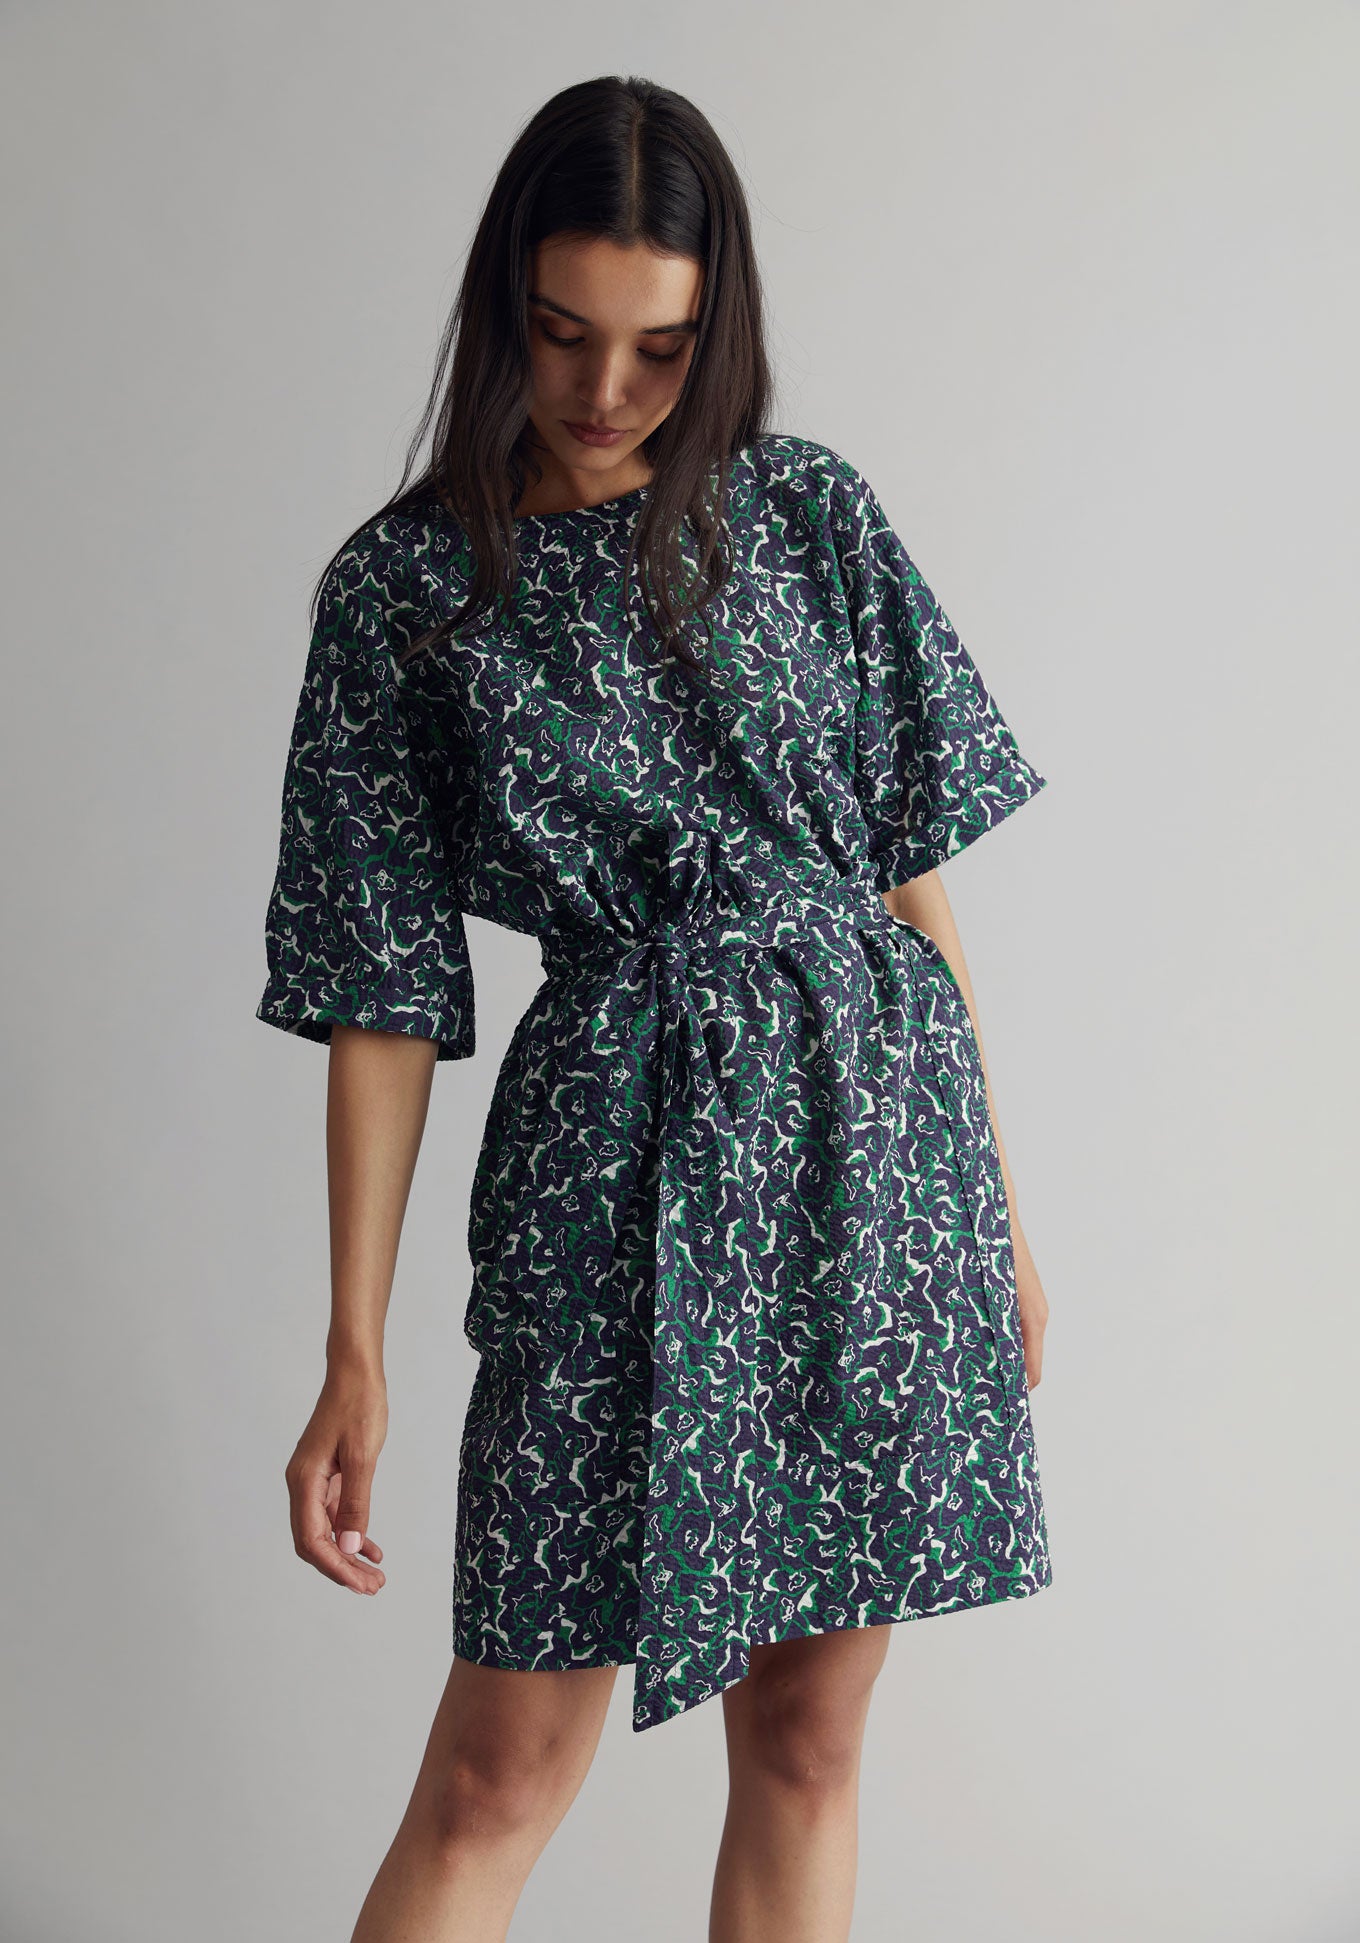 AKINA Dress - Organic Cotton Navy Print, SIZE 5 / UK 16 / EUR 44